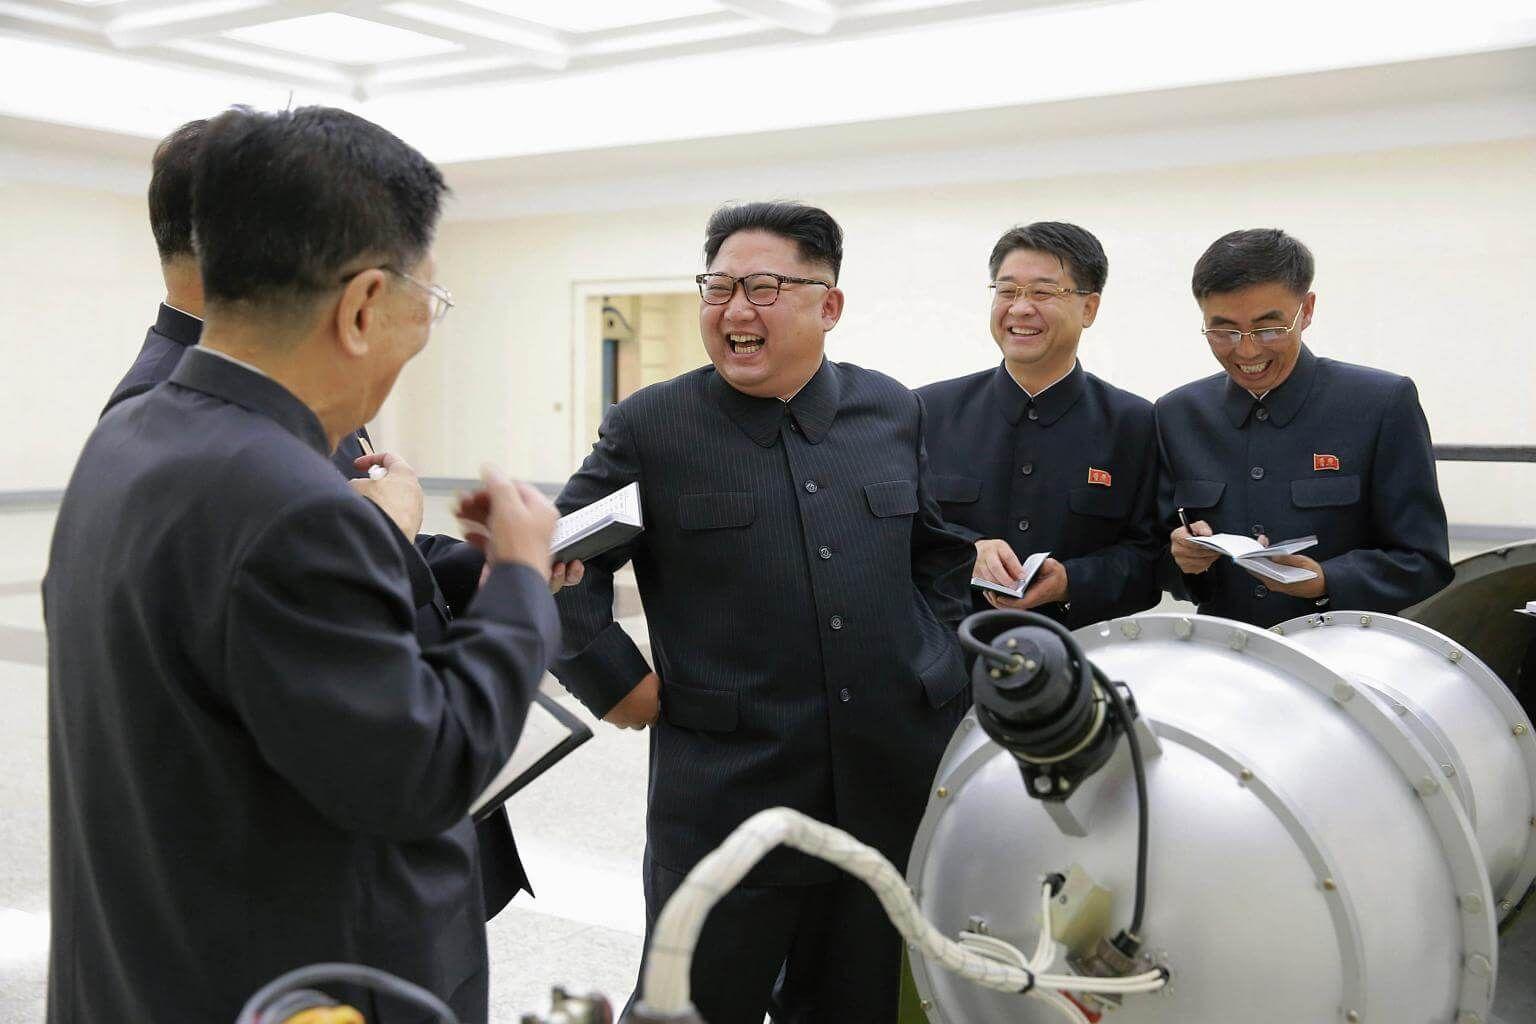 КНДР испытала термоядерный боезаряд. Ждать ли «массированного возмездия»?